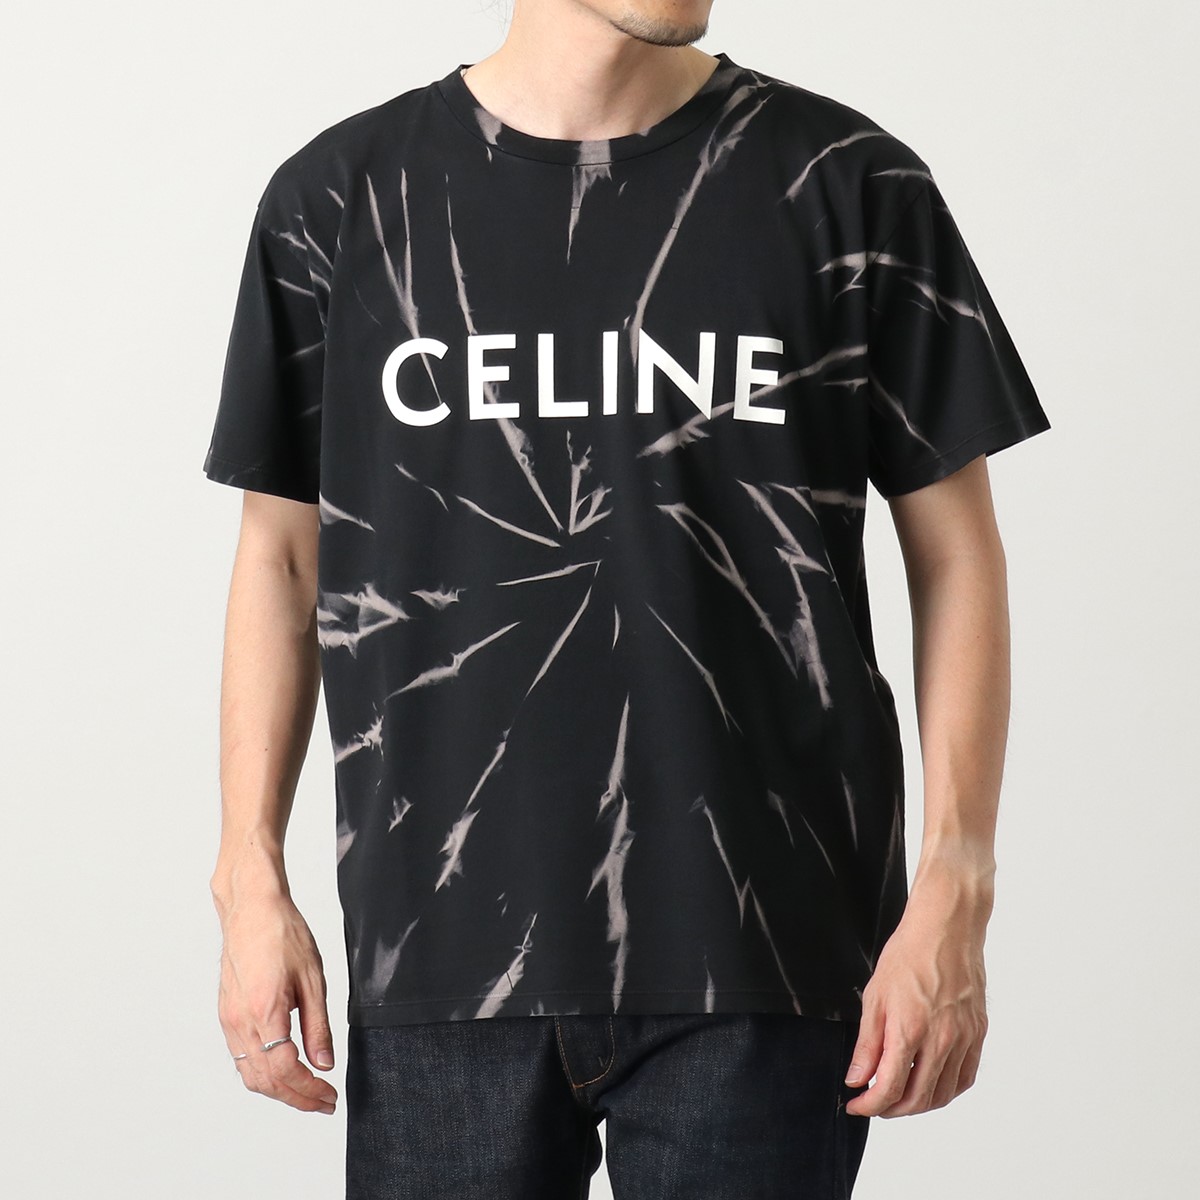 CELINE セリーヌ Tシャツ 2X820 6430 メンズ 半袖 コットン ジャージー タイダイ プリント ロゴ クルーネック カットソー  38AW | インポートセレクト musee